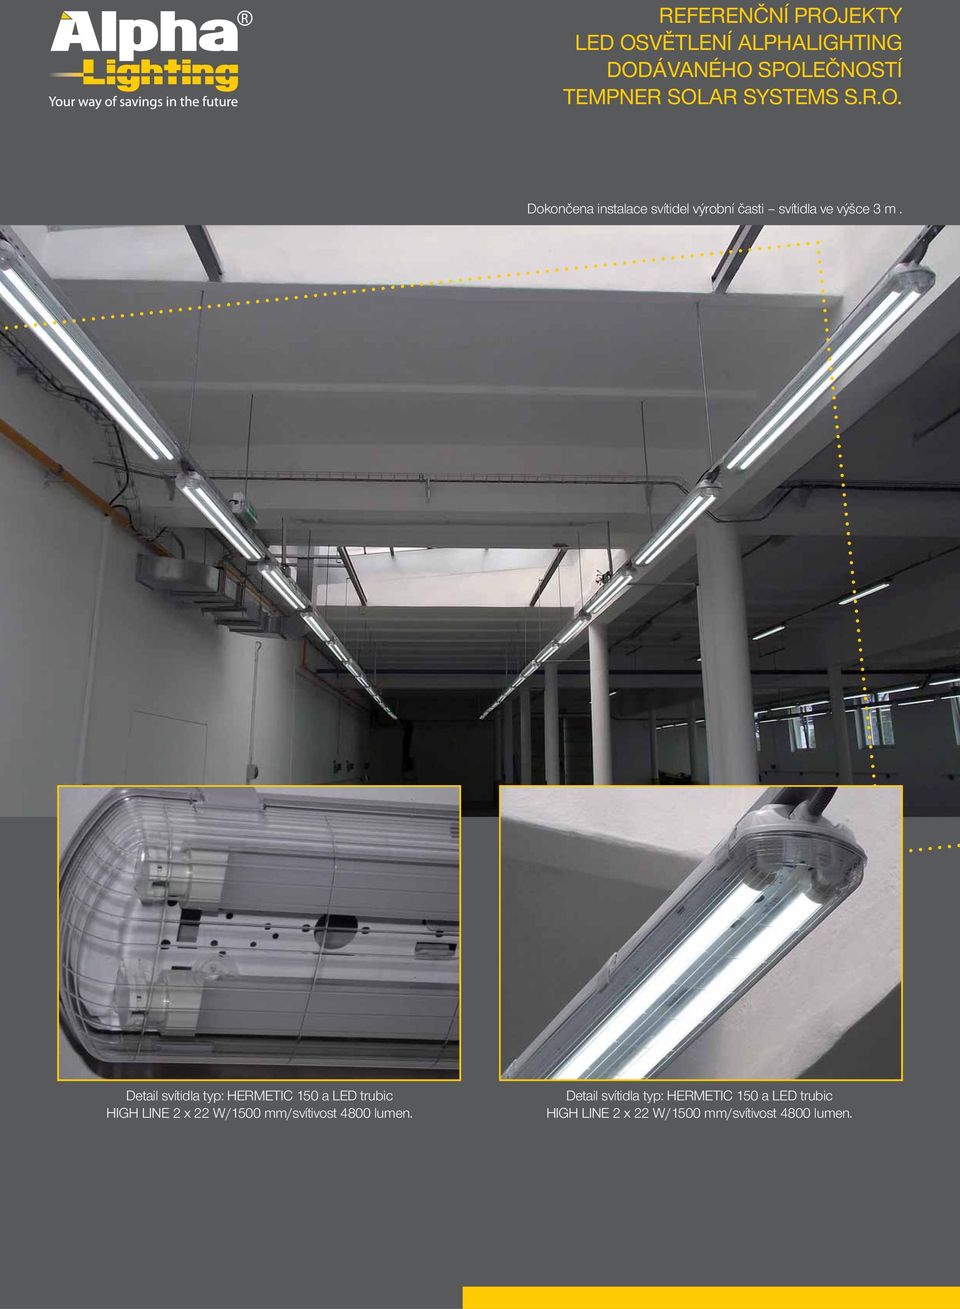 Detail svítidla typ: HERMETIC 150 a LED trubic HIGH LINE 2 x 22 W/1500 mm/svítivost 4800